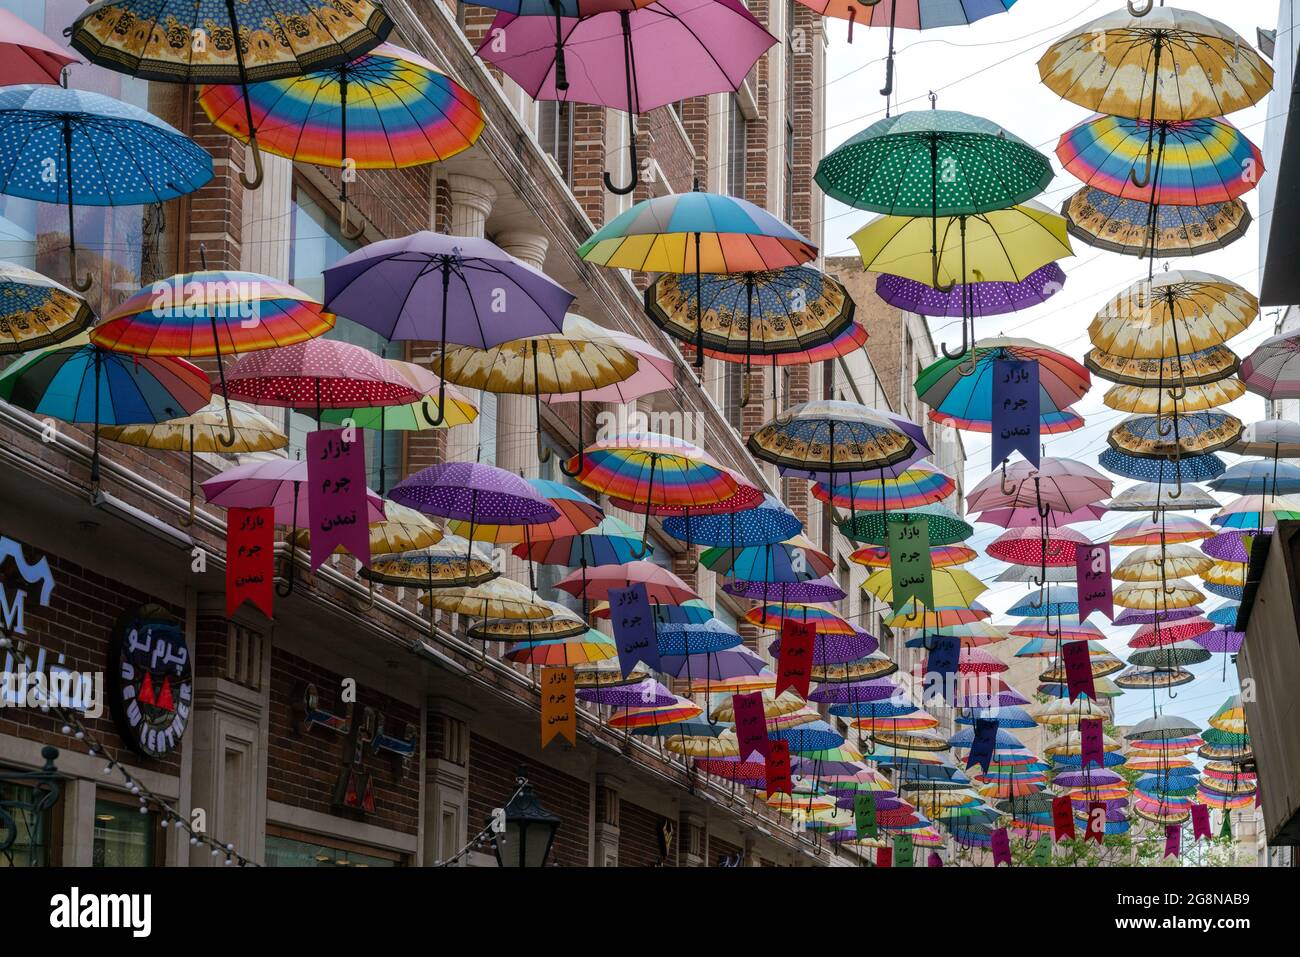 Teherán, Irán - 04.25.2019: Un montón de paraguas coloridos colgando abierto por encima de la calle lateral de Teherán, Irán. Arte callejero persa Foto de stock